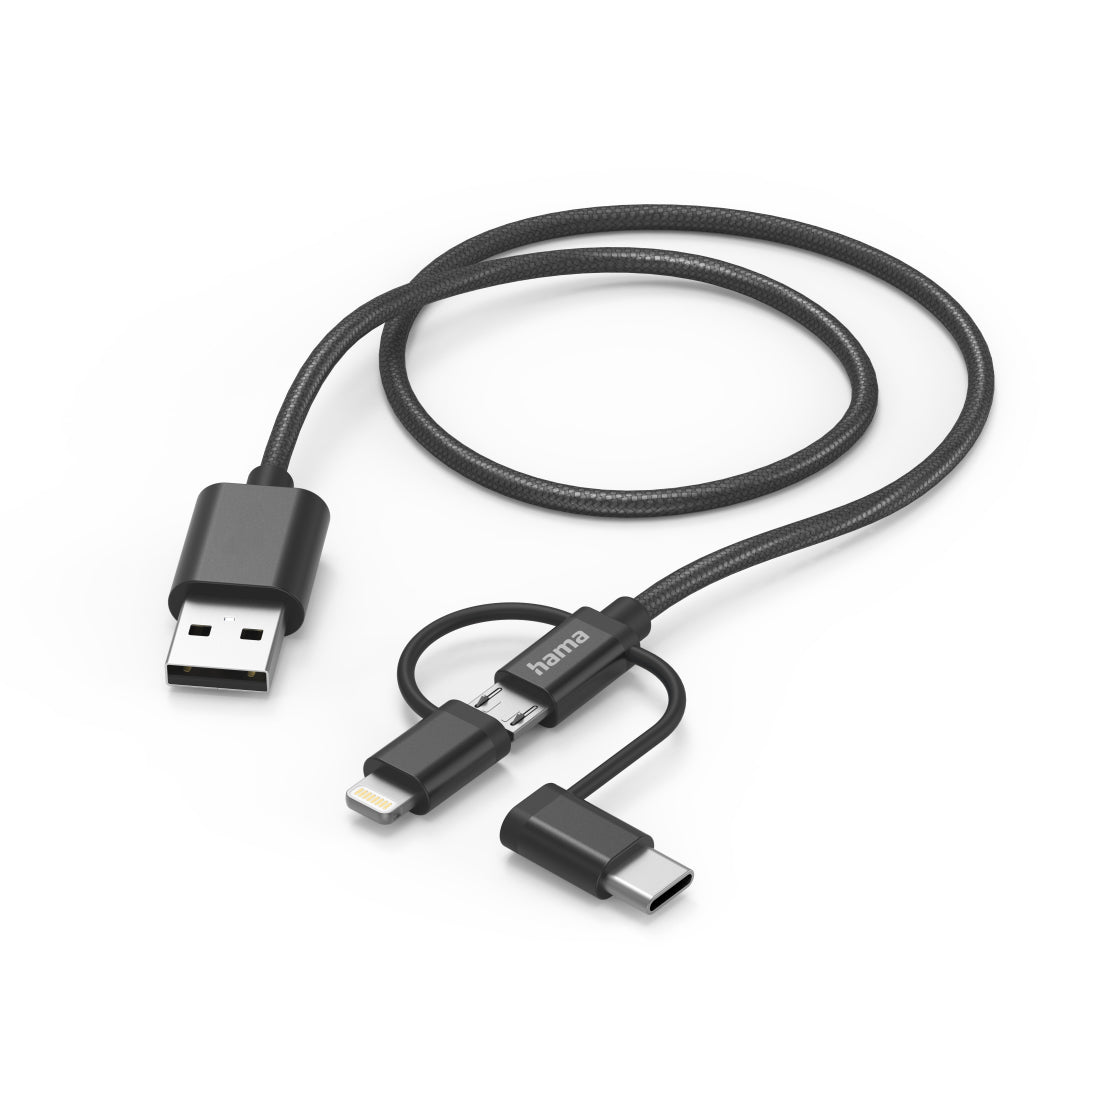 HAMA 3in1 micri USB +USB-C +LTG cable, 1.5m, black